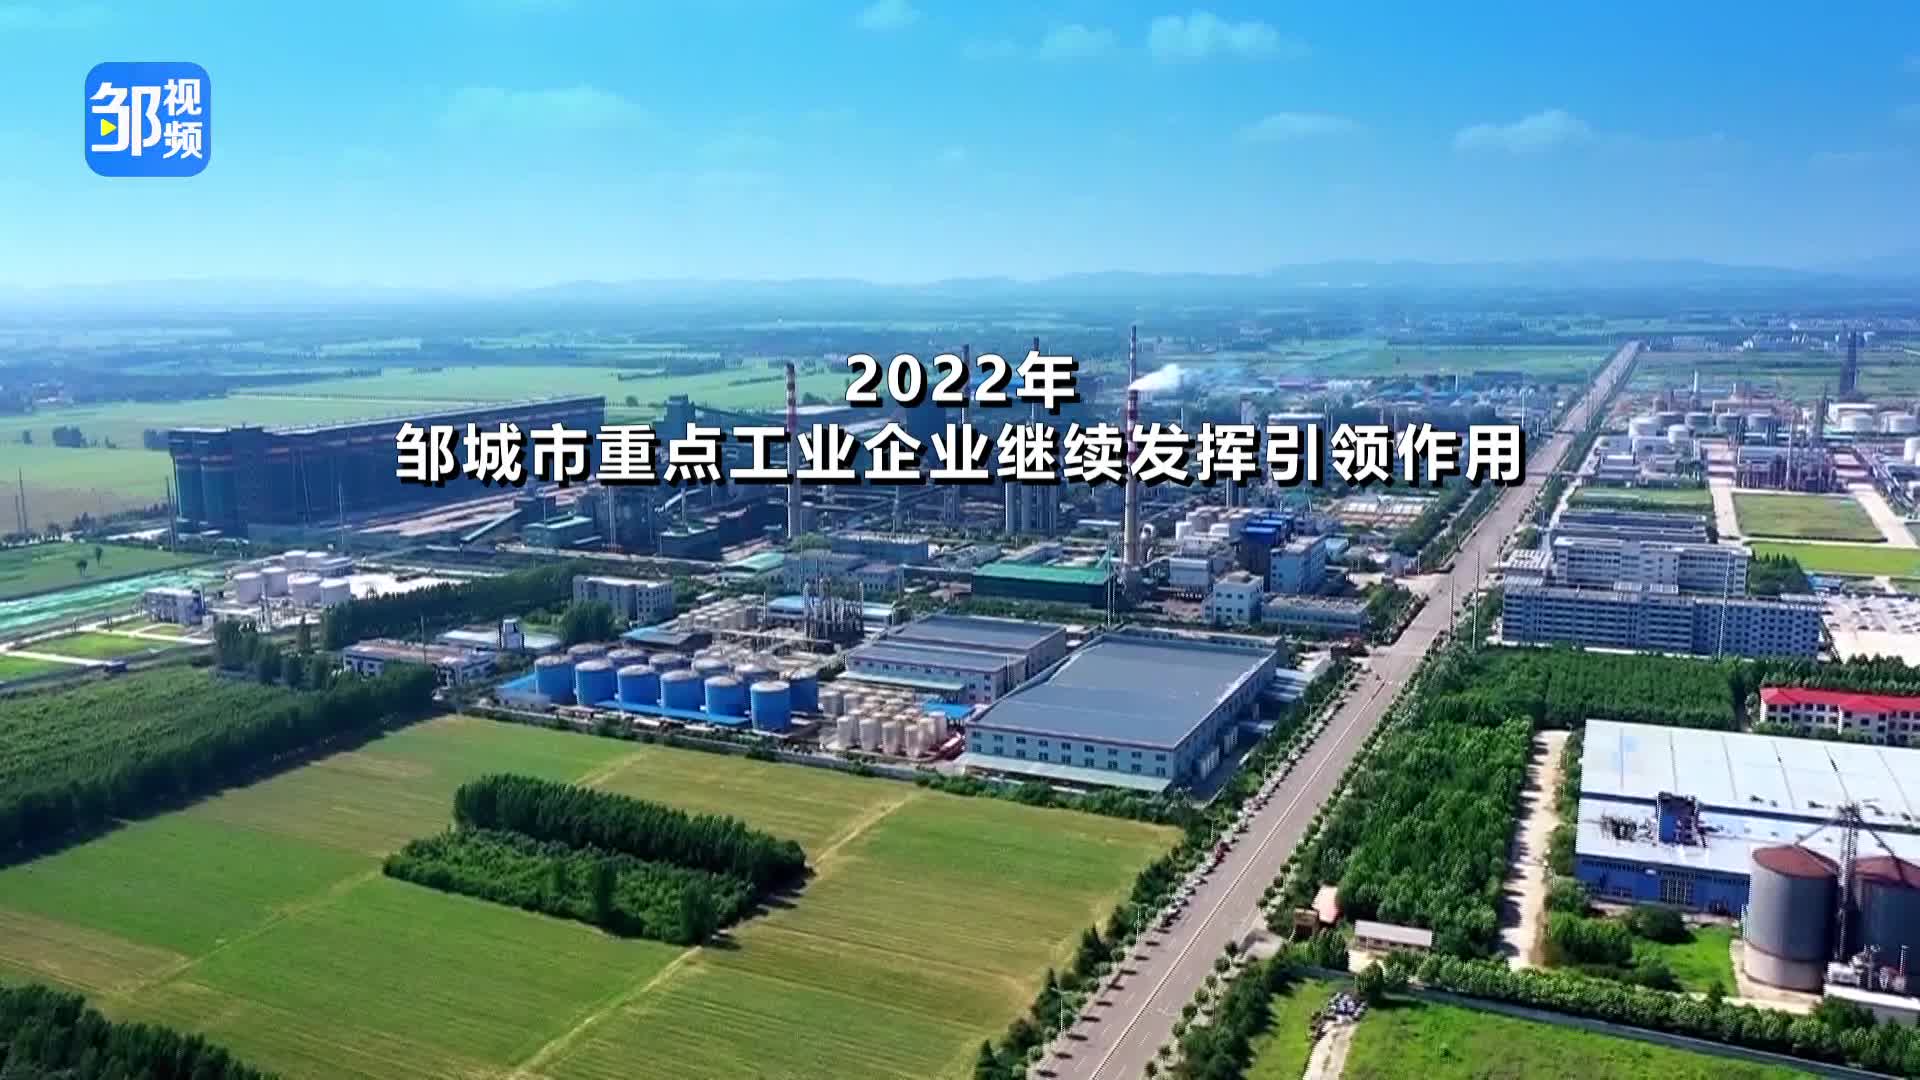 【邹视频·新闻】36秒| 2022年邹城市重点工业企业继续发挥引领作用